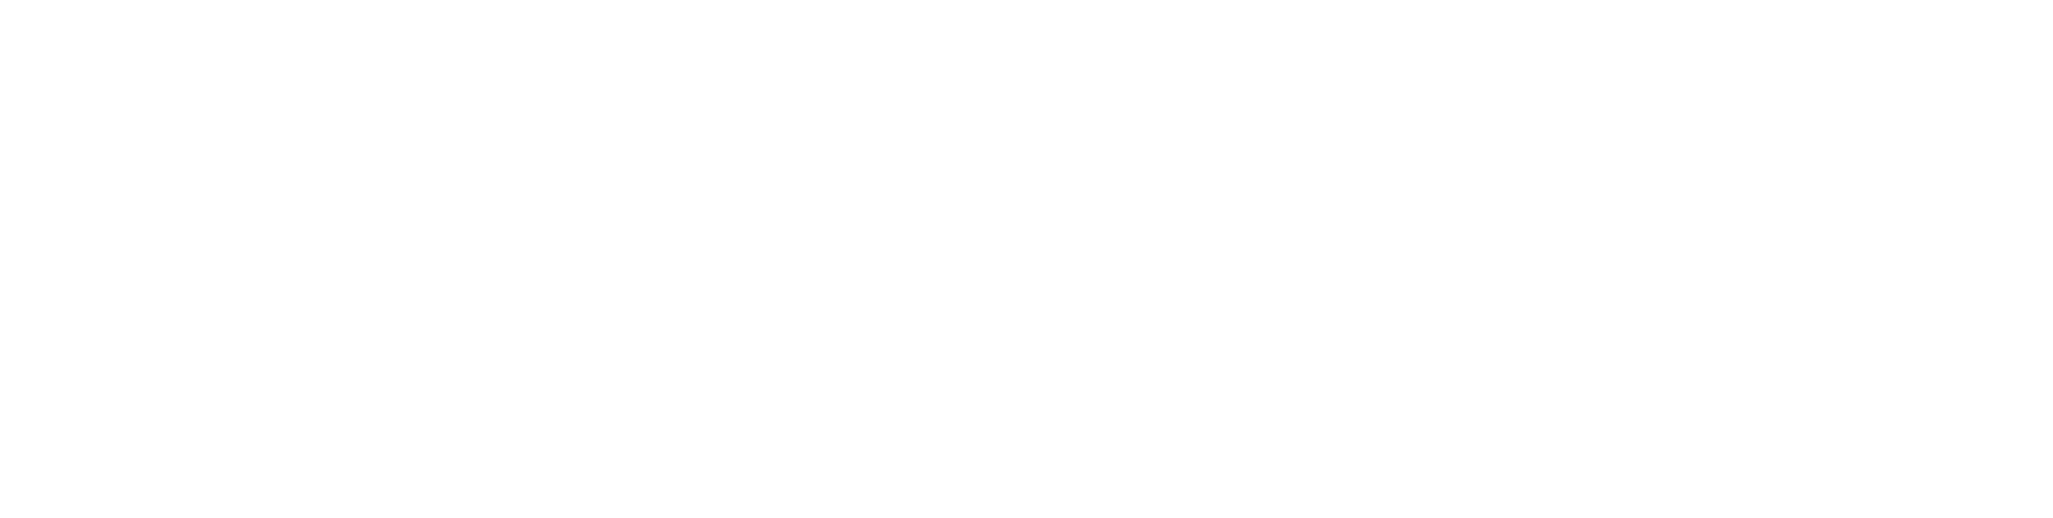 Business_Kemi_logo_nega_RGB valkoinen teksti